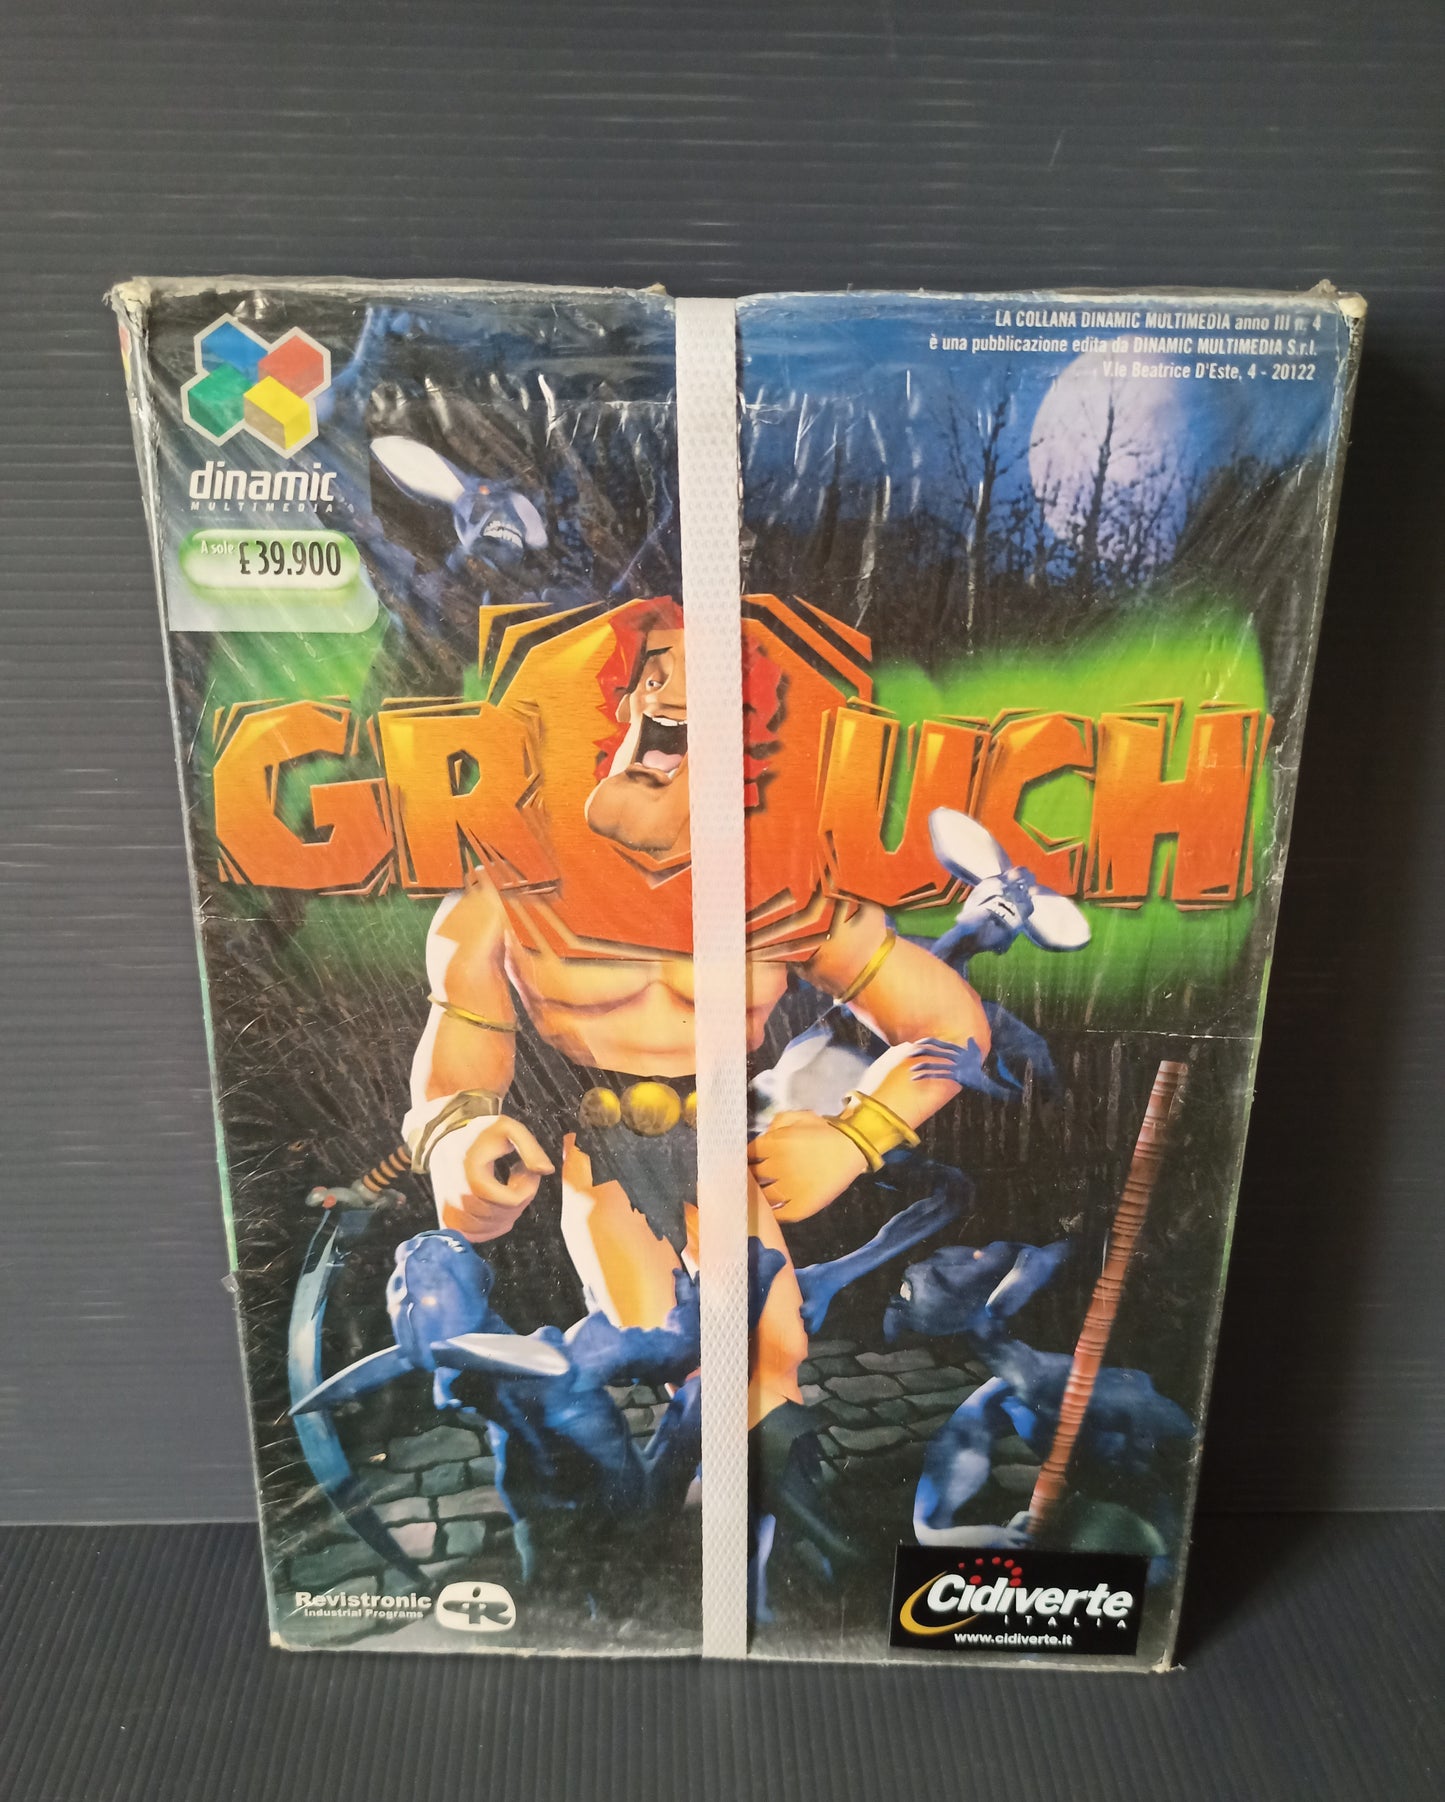 Videogioco PC Grouch, Sigillato